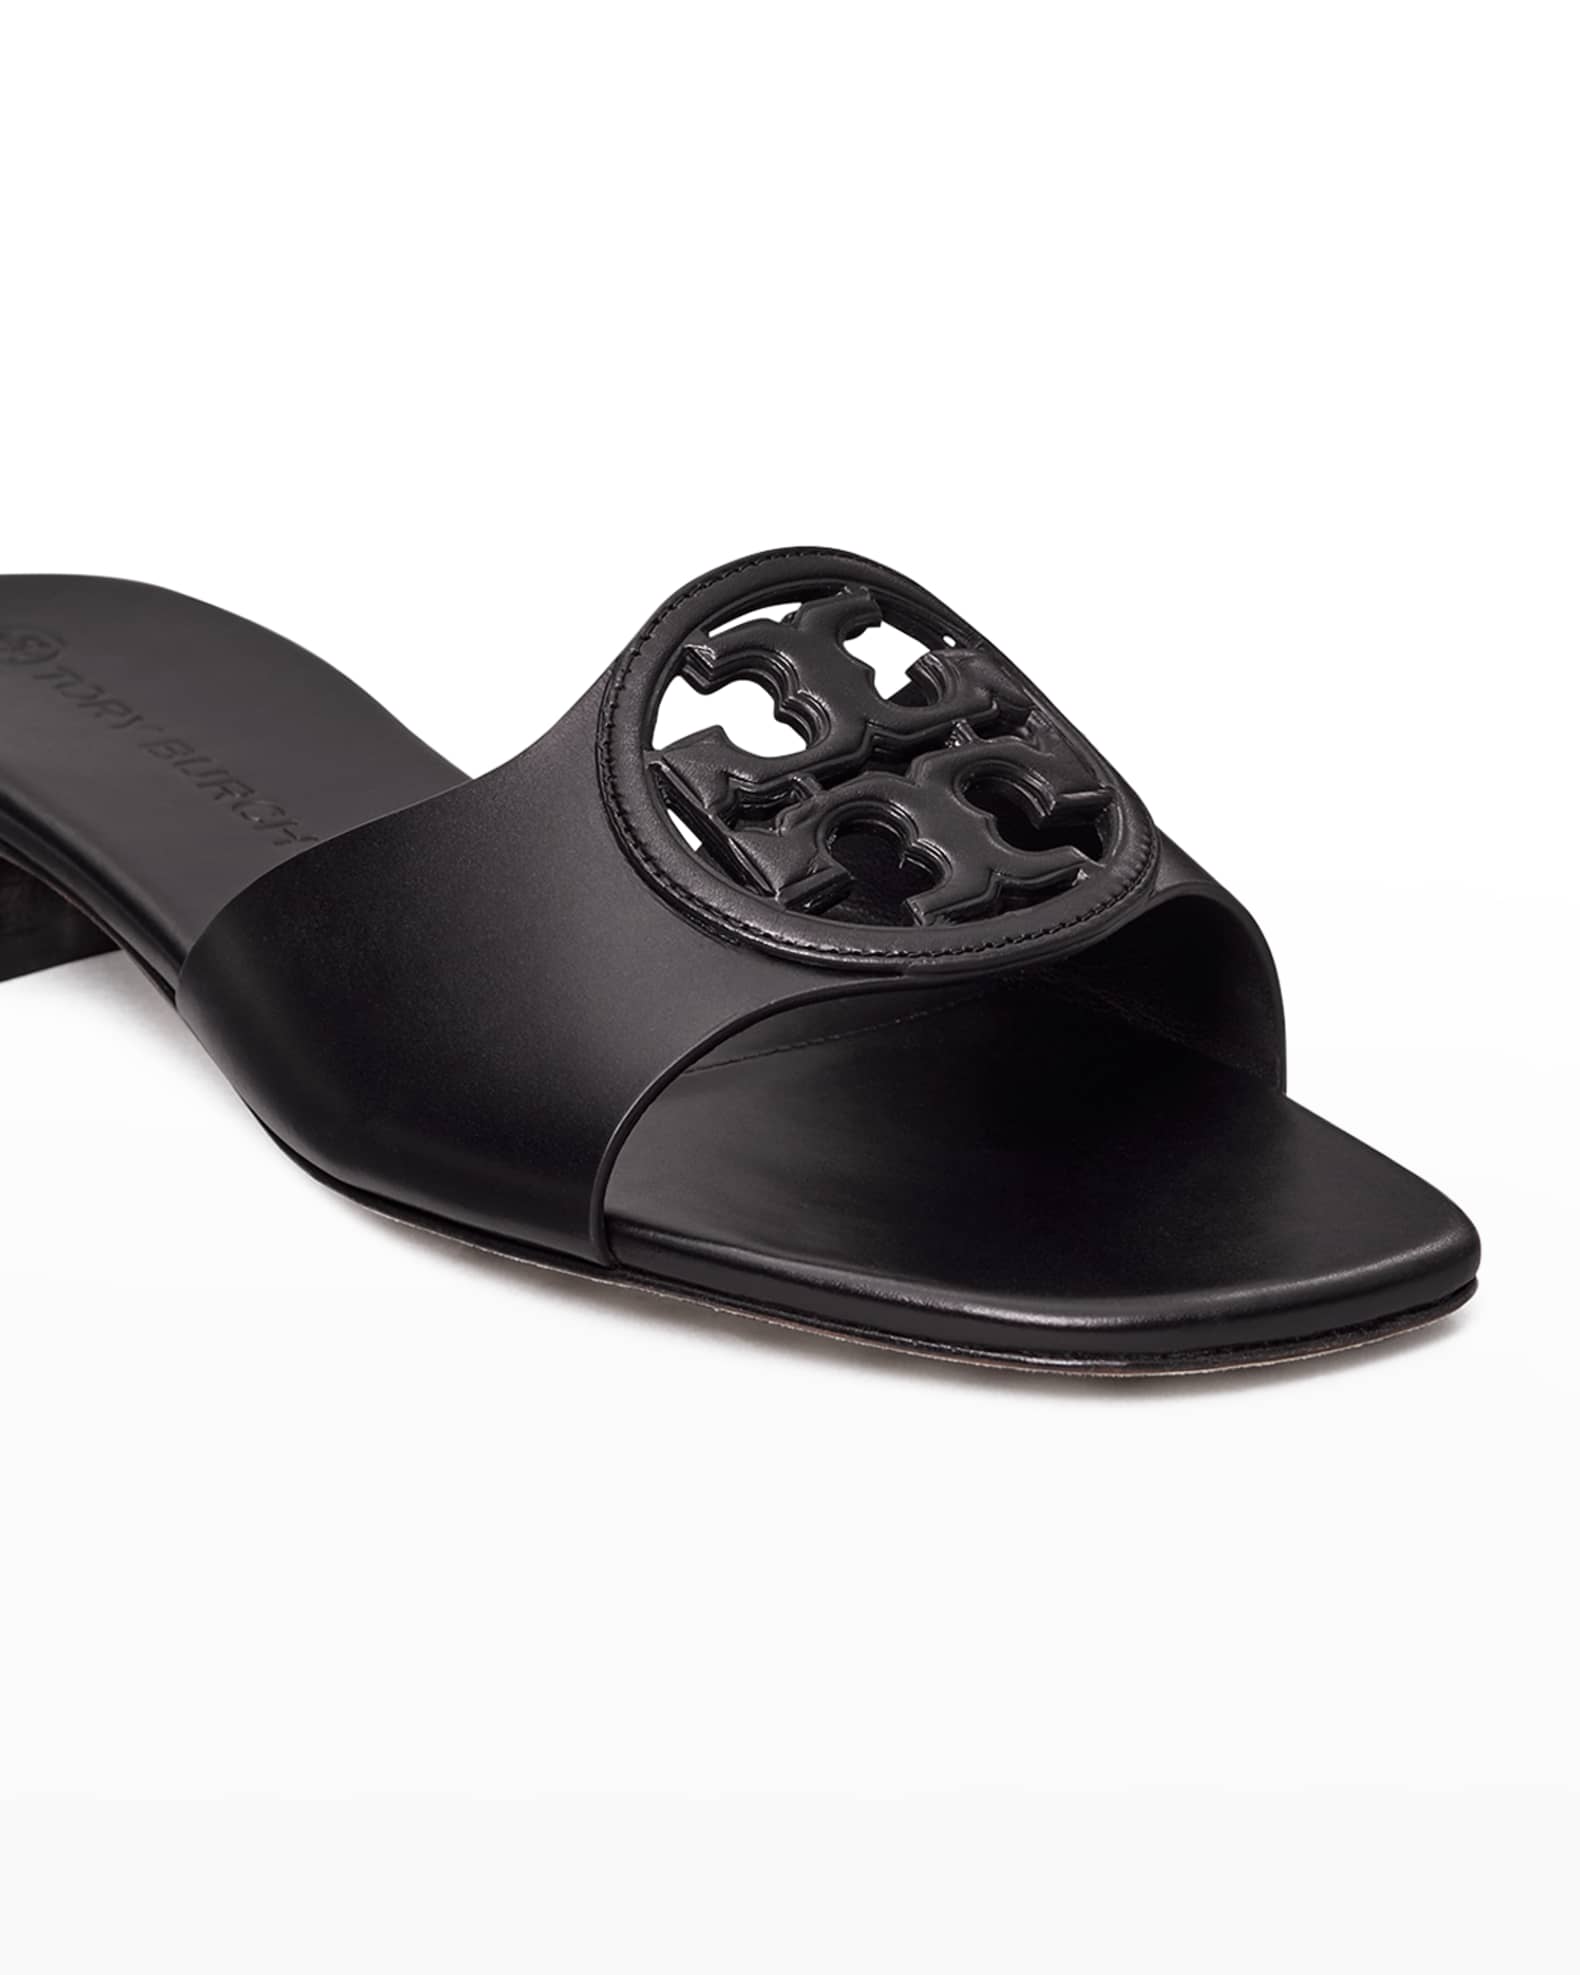 Tory Burch Bombe Miller Medallion Slide Sandals | Neiman Marcus